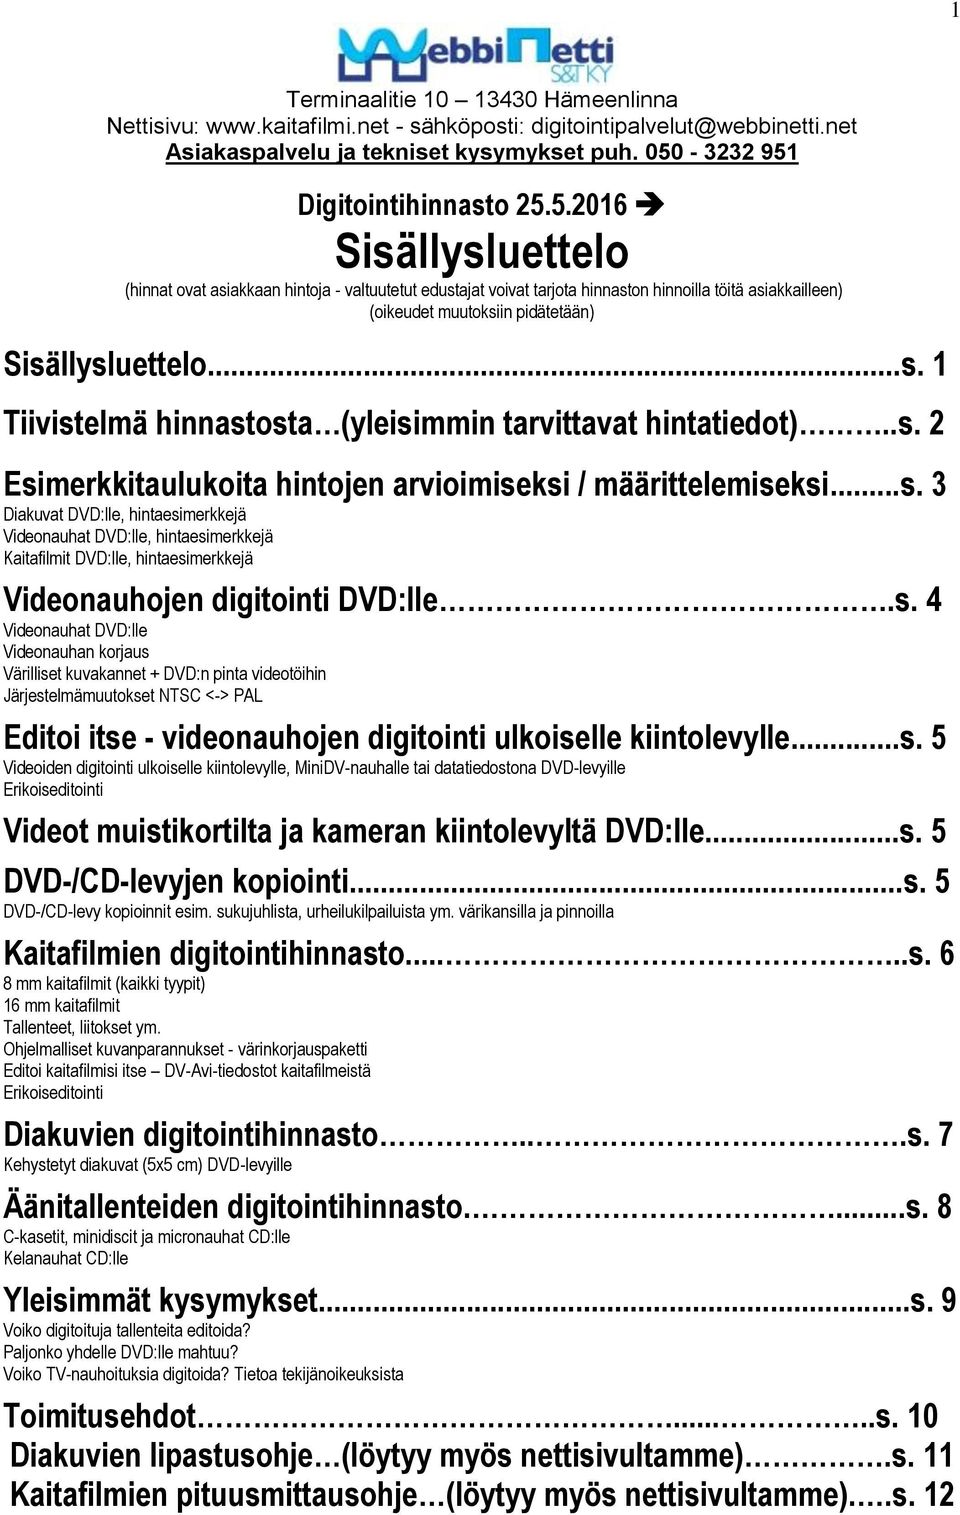 ..s. 1 Tiivistelmä hinnastosta (yleisimmin tarvittavat hintatiedot)..s. 2 Esimerkkitaulukoita hintojen arvioimiseksi / määrittelemiseksi...s. 3 Diakuvat DVD:lle, hintaesimerkkejä Videonauhat DVD:lle, hintaesimerkkejä Kaitafilmit DVD:lle, hintaesimerkkejä Videonauhojen digitointi DVD:lle.